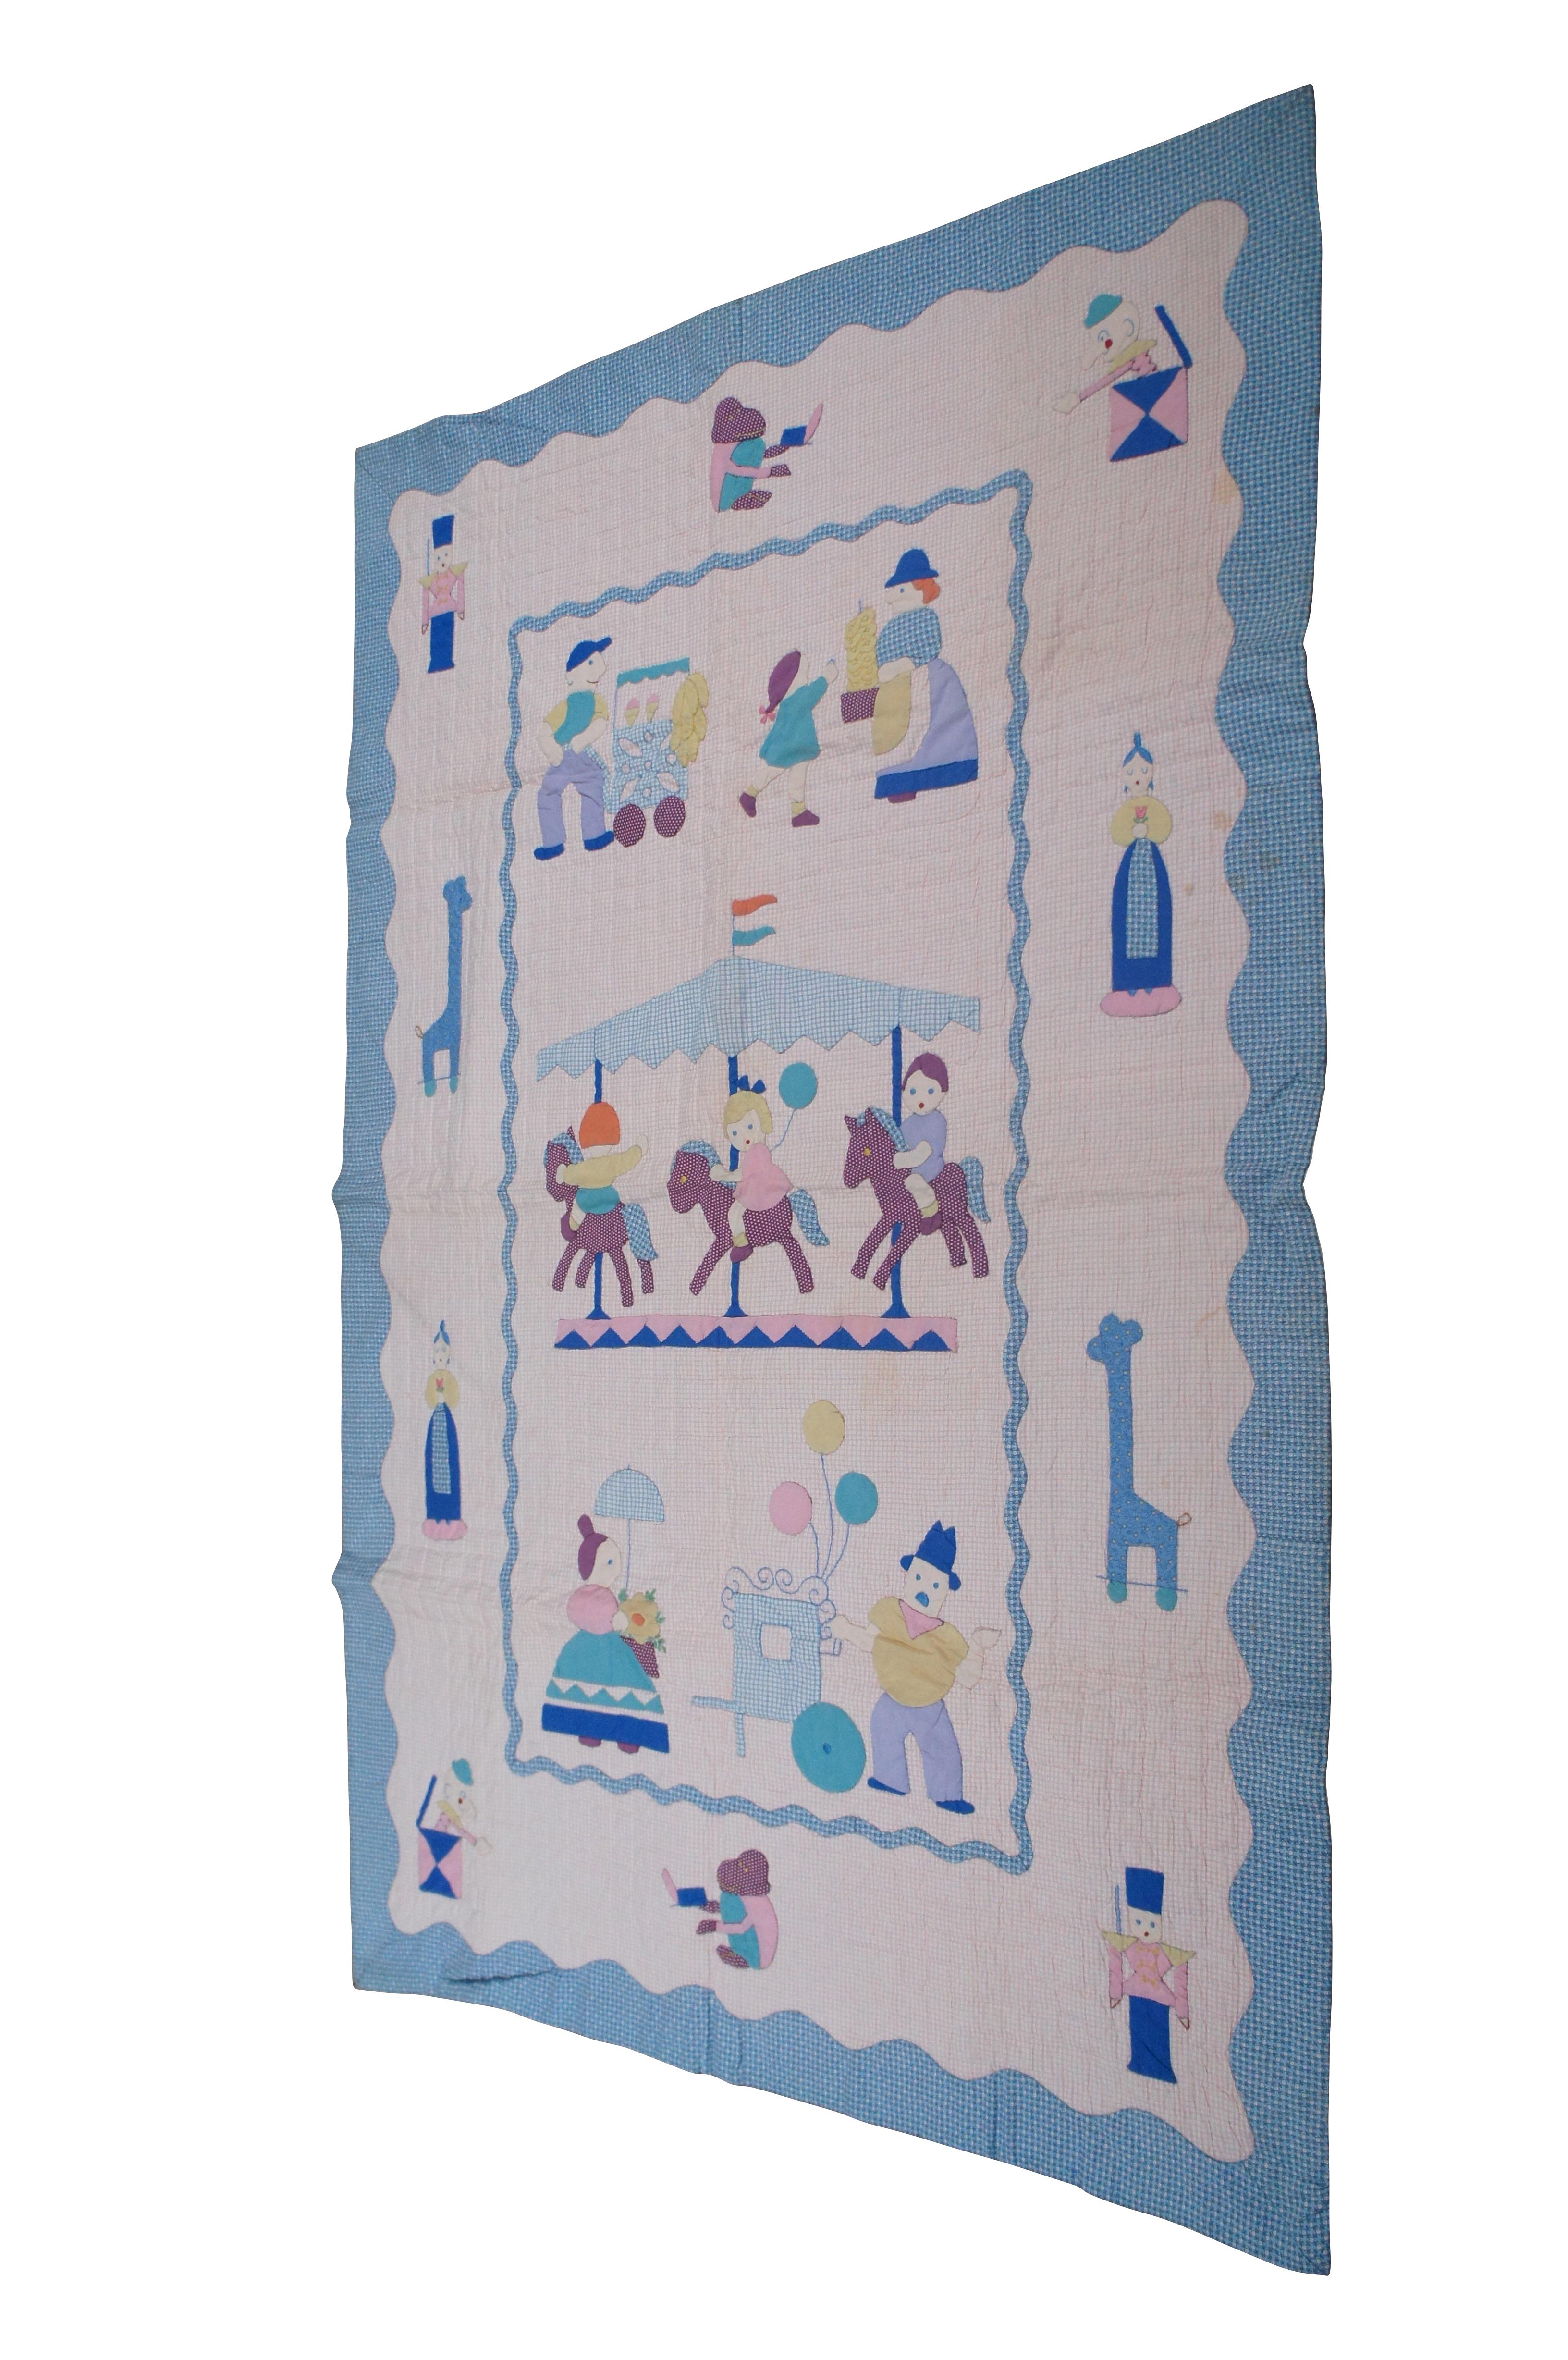 Mid-Century Modern 1960s Vintage Merry Go Round Crib Quilt Applique Cotton Childrens Toddler 53.5